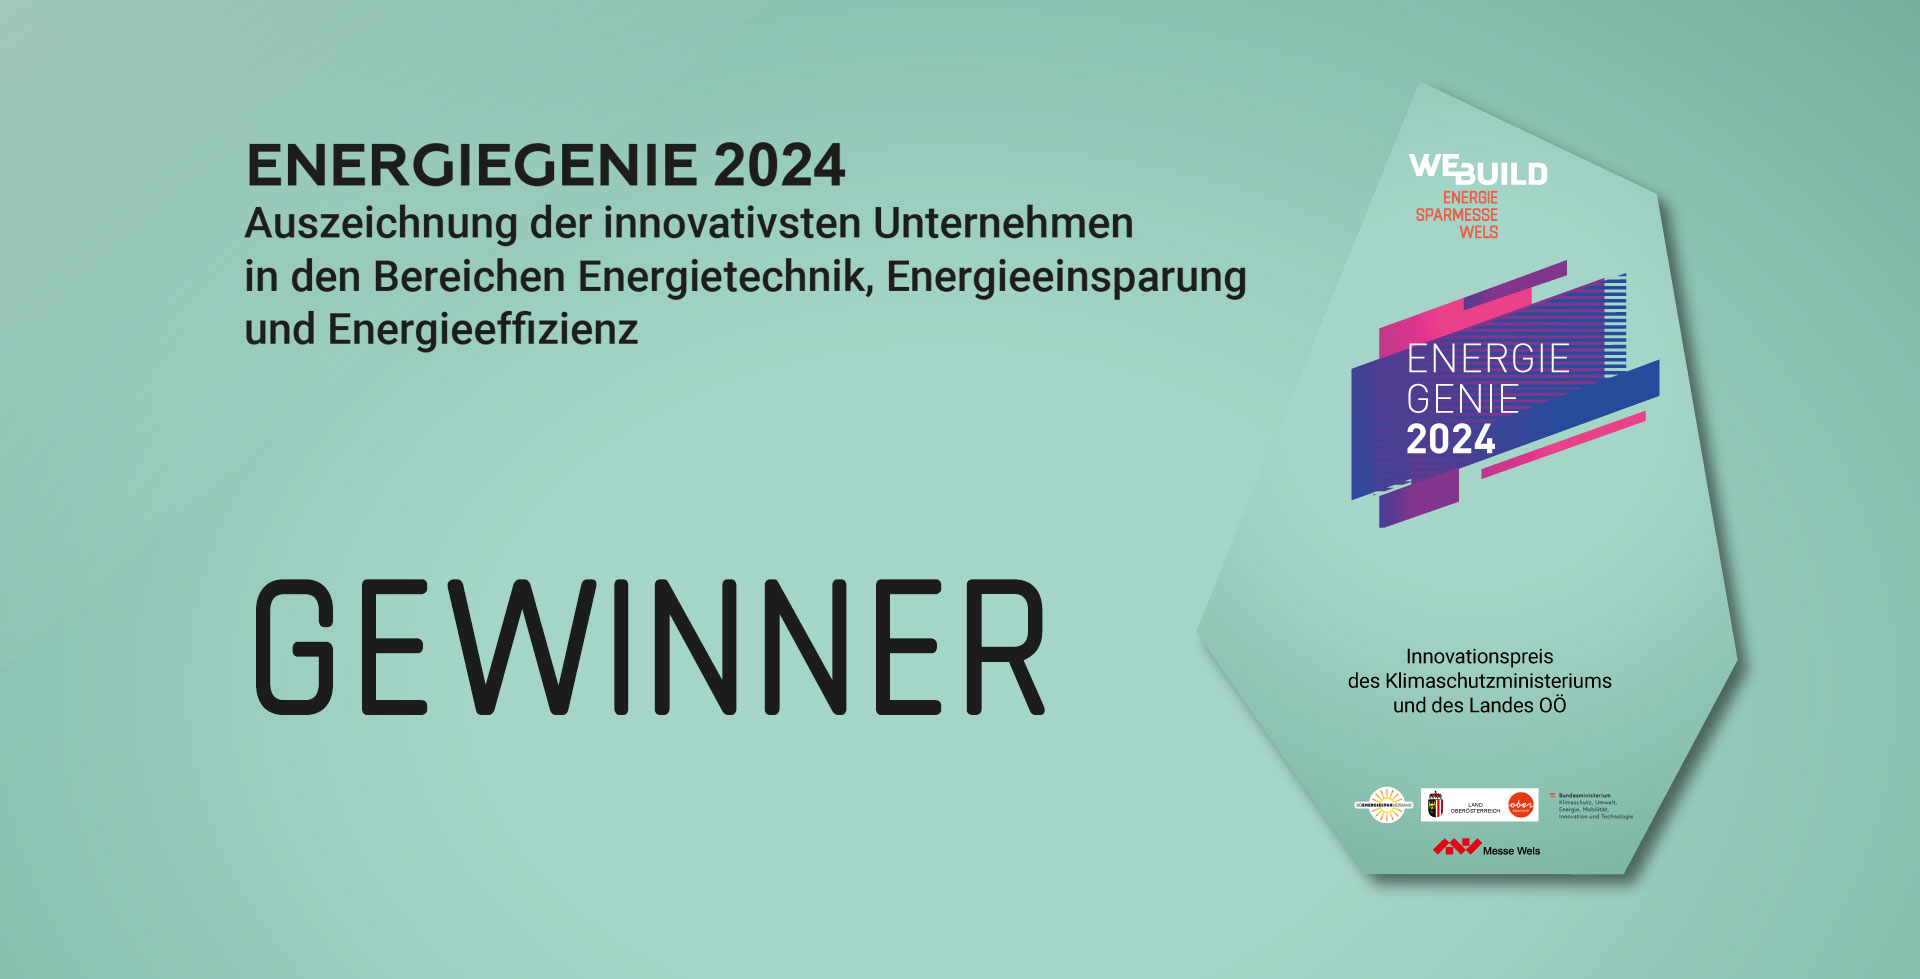 EnergieGenie 2024 - Preisträger stehen fest